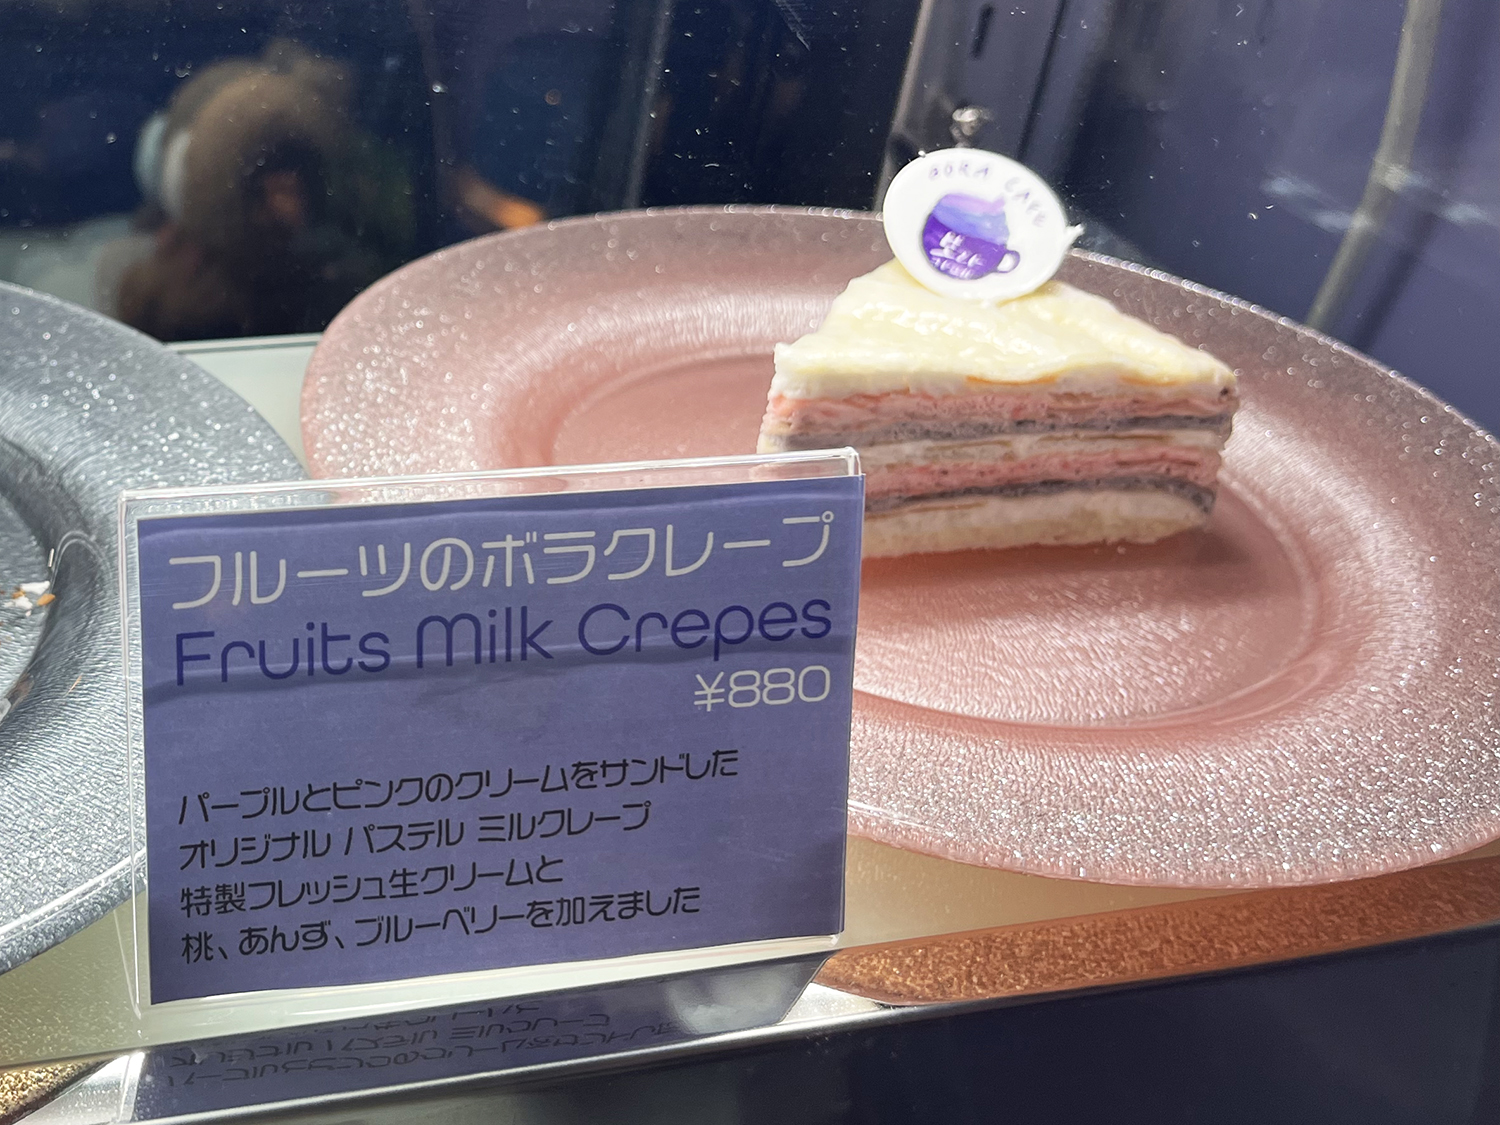 パープルとピンクのクリームをサンドしたオリジナルミルクレープ880円もおいしそう。